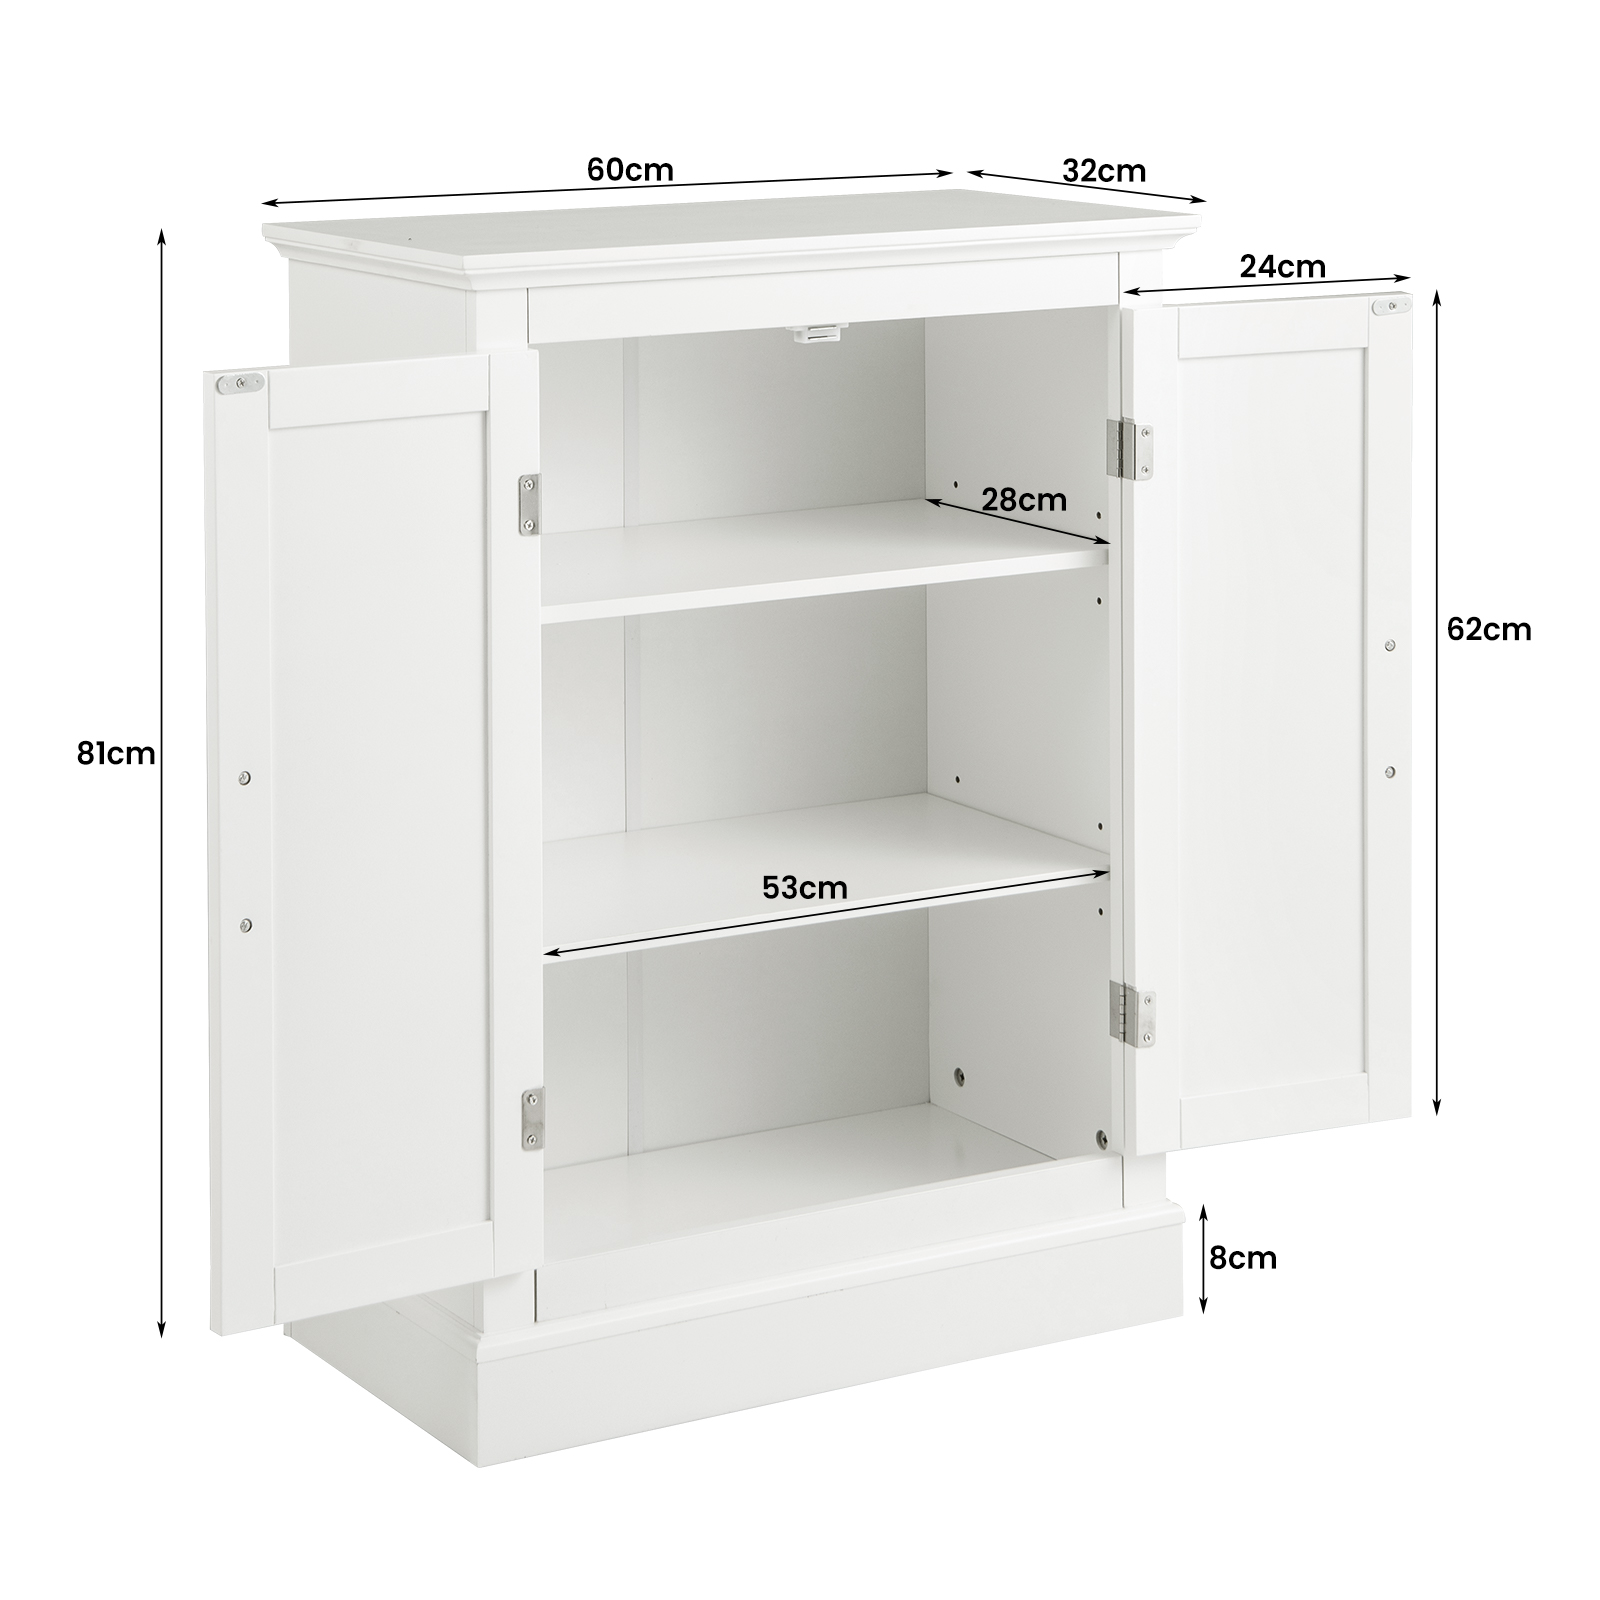 2_Doors_Freestanding_Bathroom_Floor_Cabinet_with_Adjustable_Shelves_White_size-4.jpg